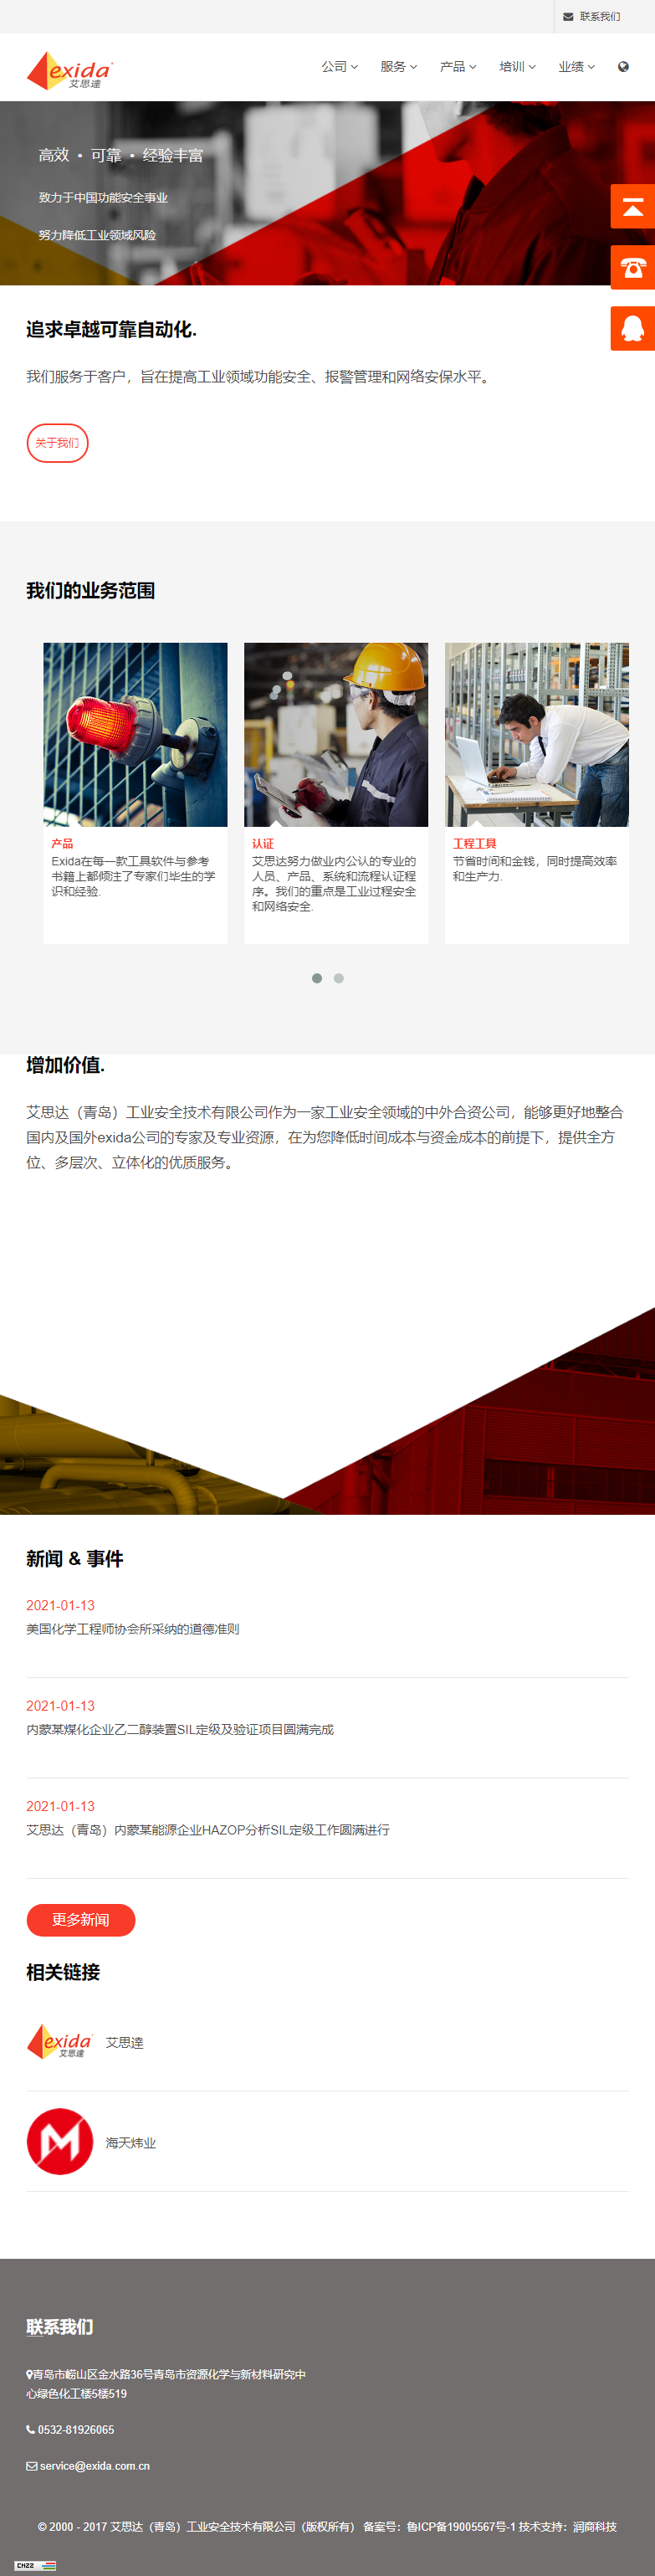 艾思达（青岛）工业安全技术有限公司网站案例